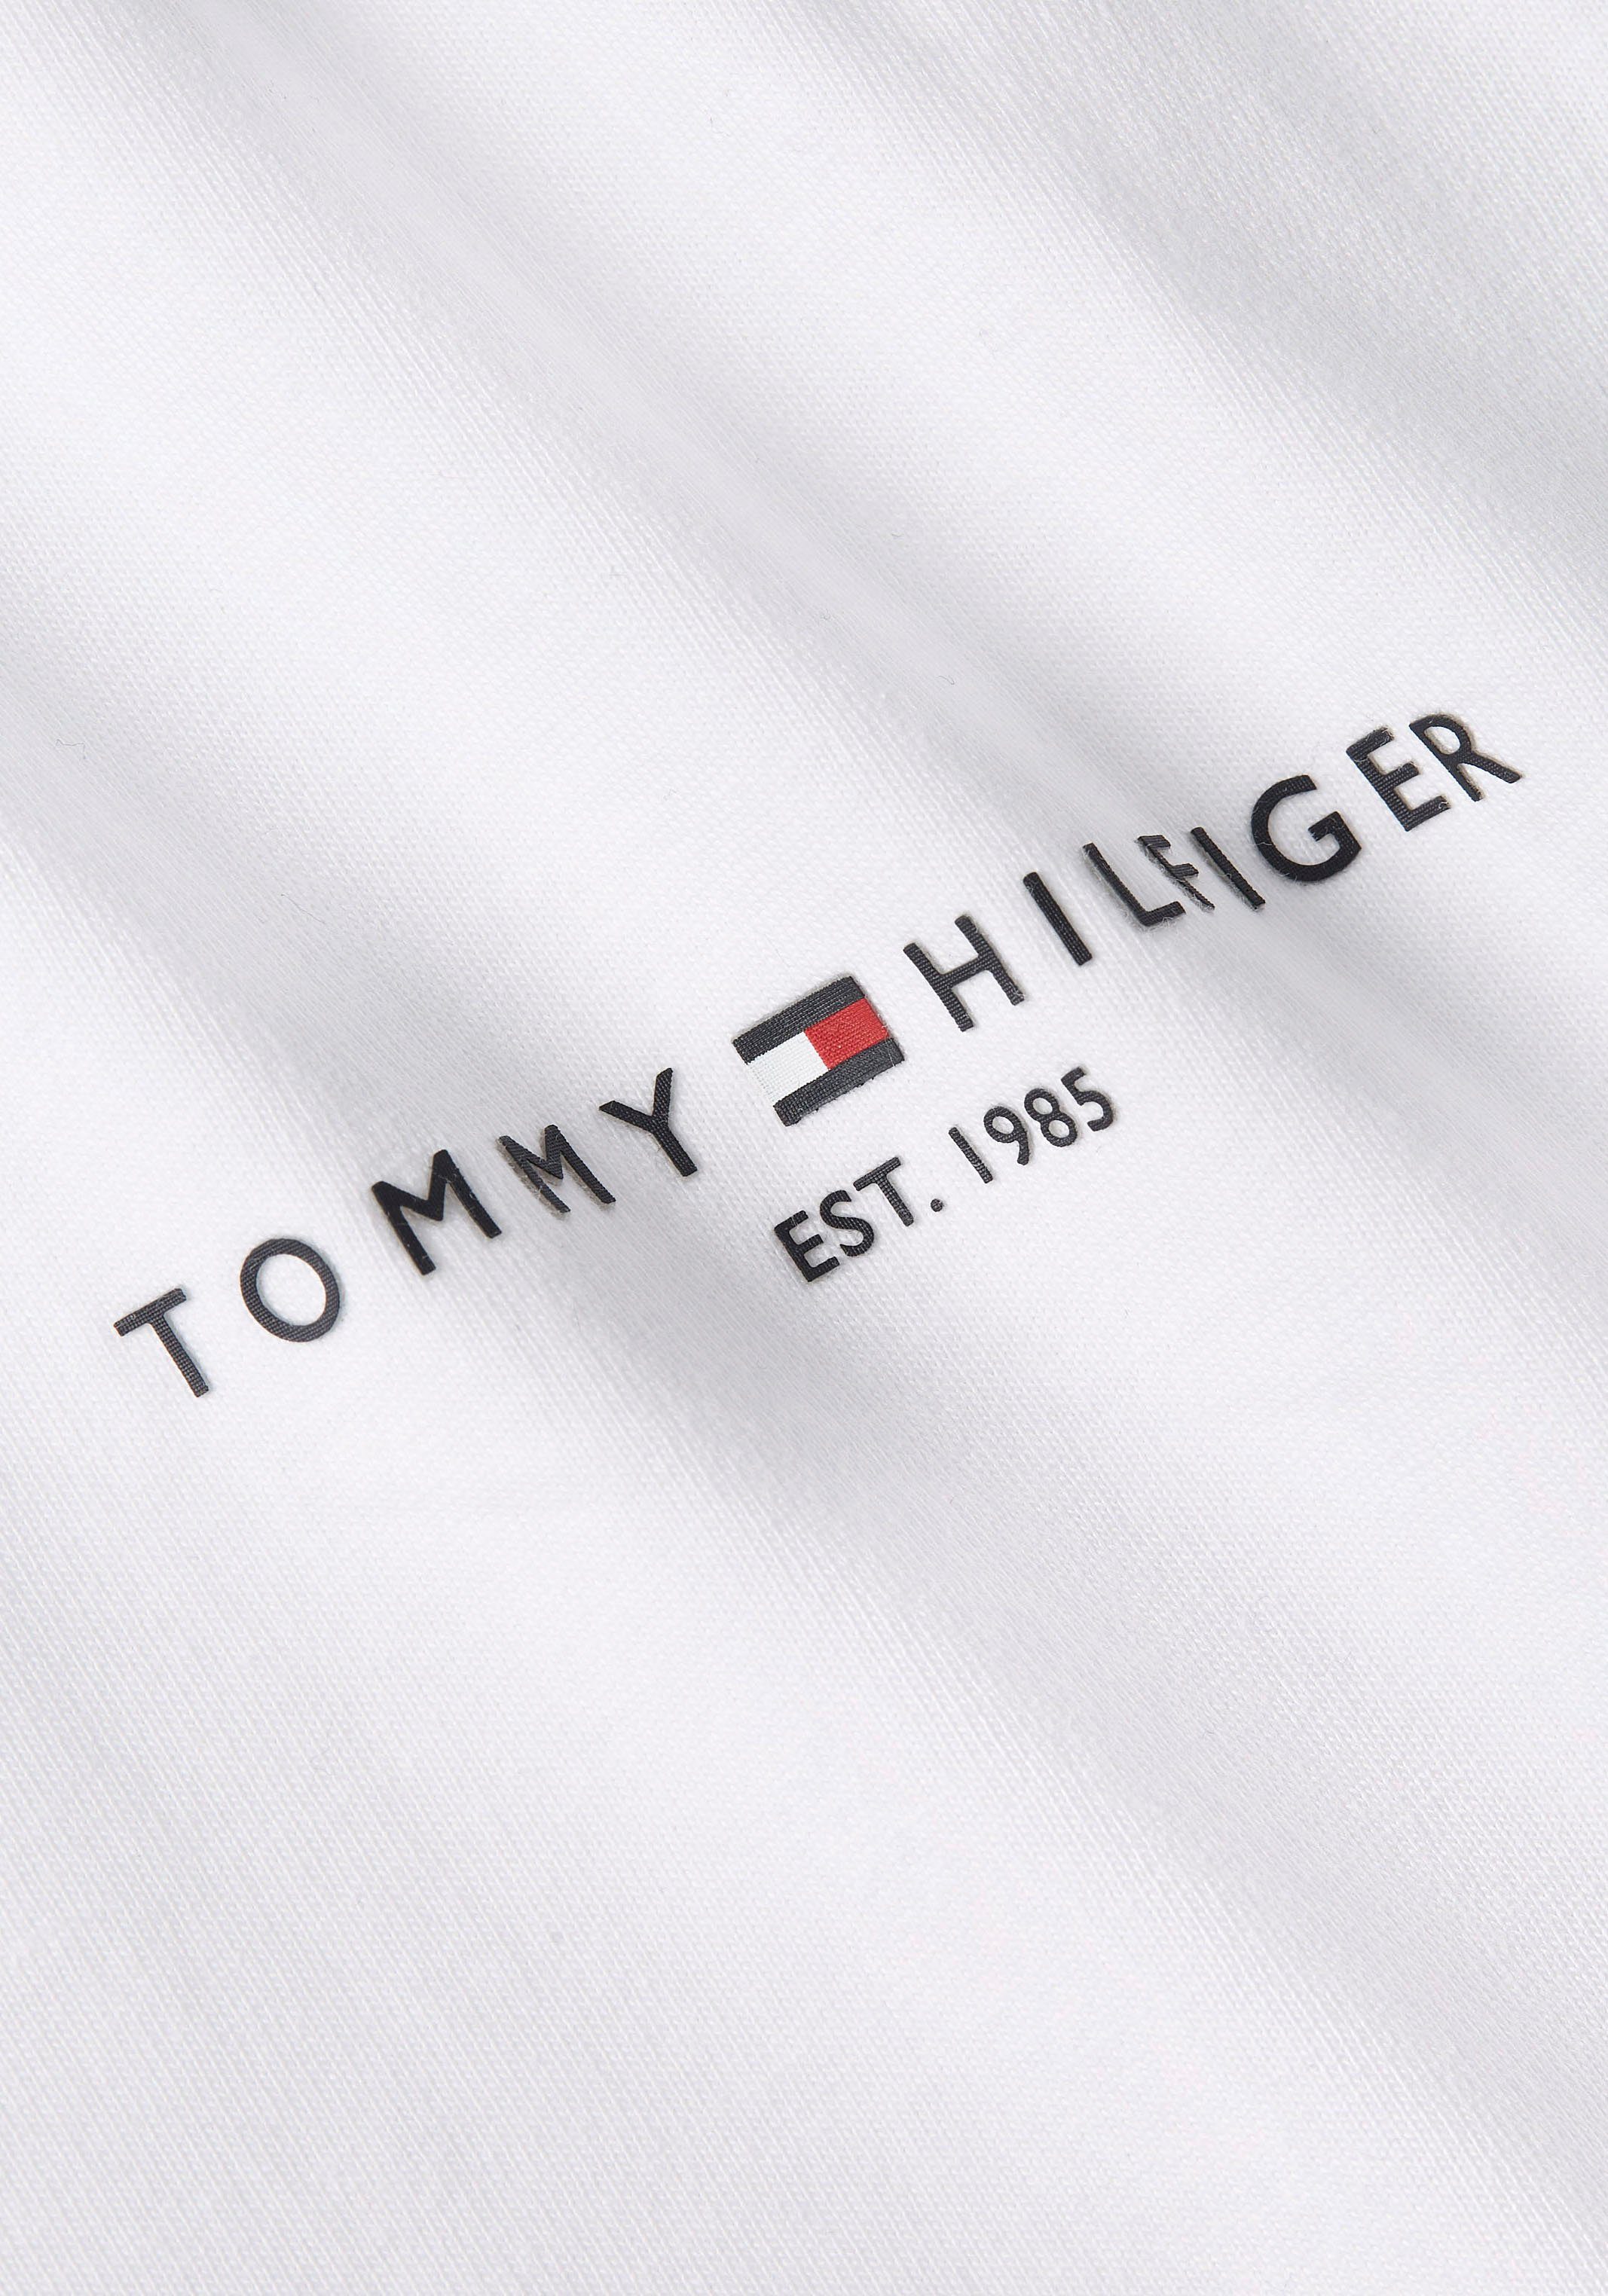 Tommy TEE mit TH-Farben Hilfiger an White PREP STRIPE Rundhalsshirt GLOBAL Ärmeln in Streifen beiden